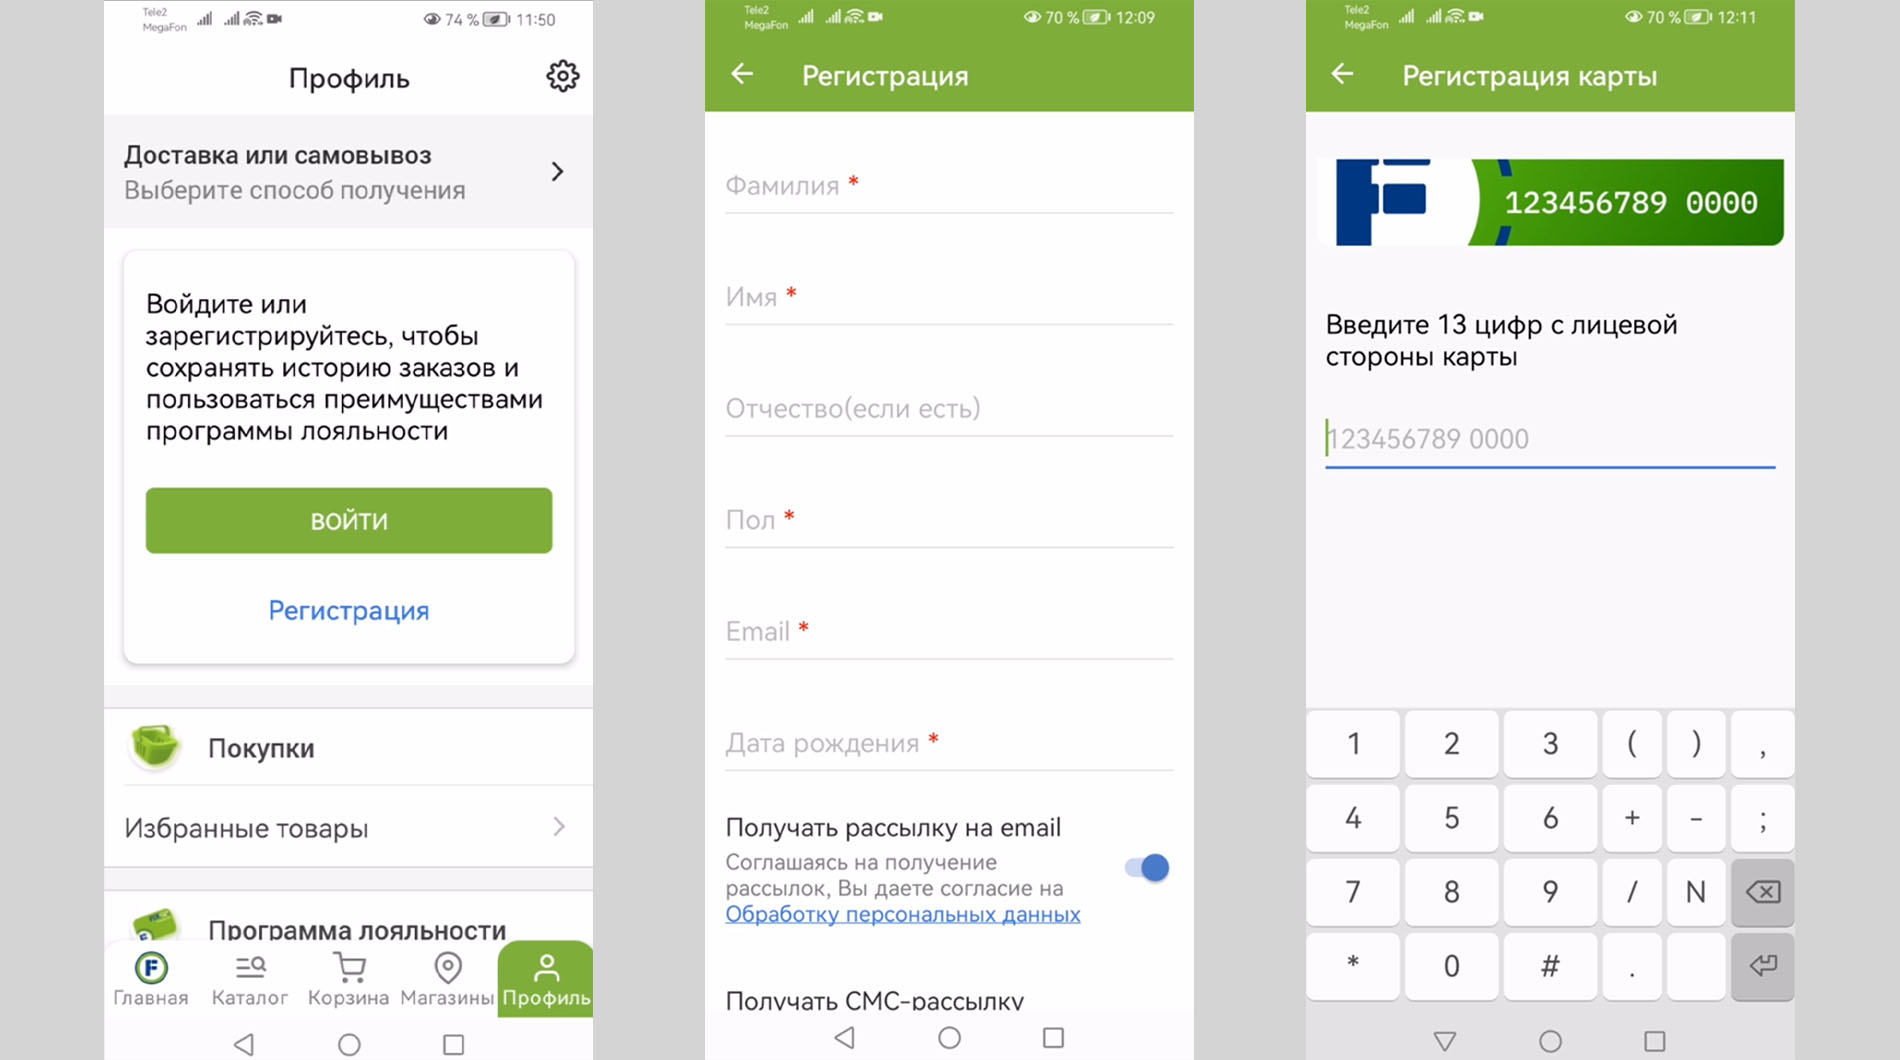 Скриншоты экрана мобильного телефона с этапами регистрации в приложении Фикс Прайс.